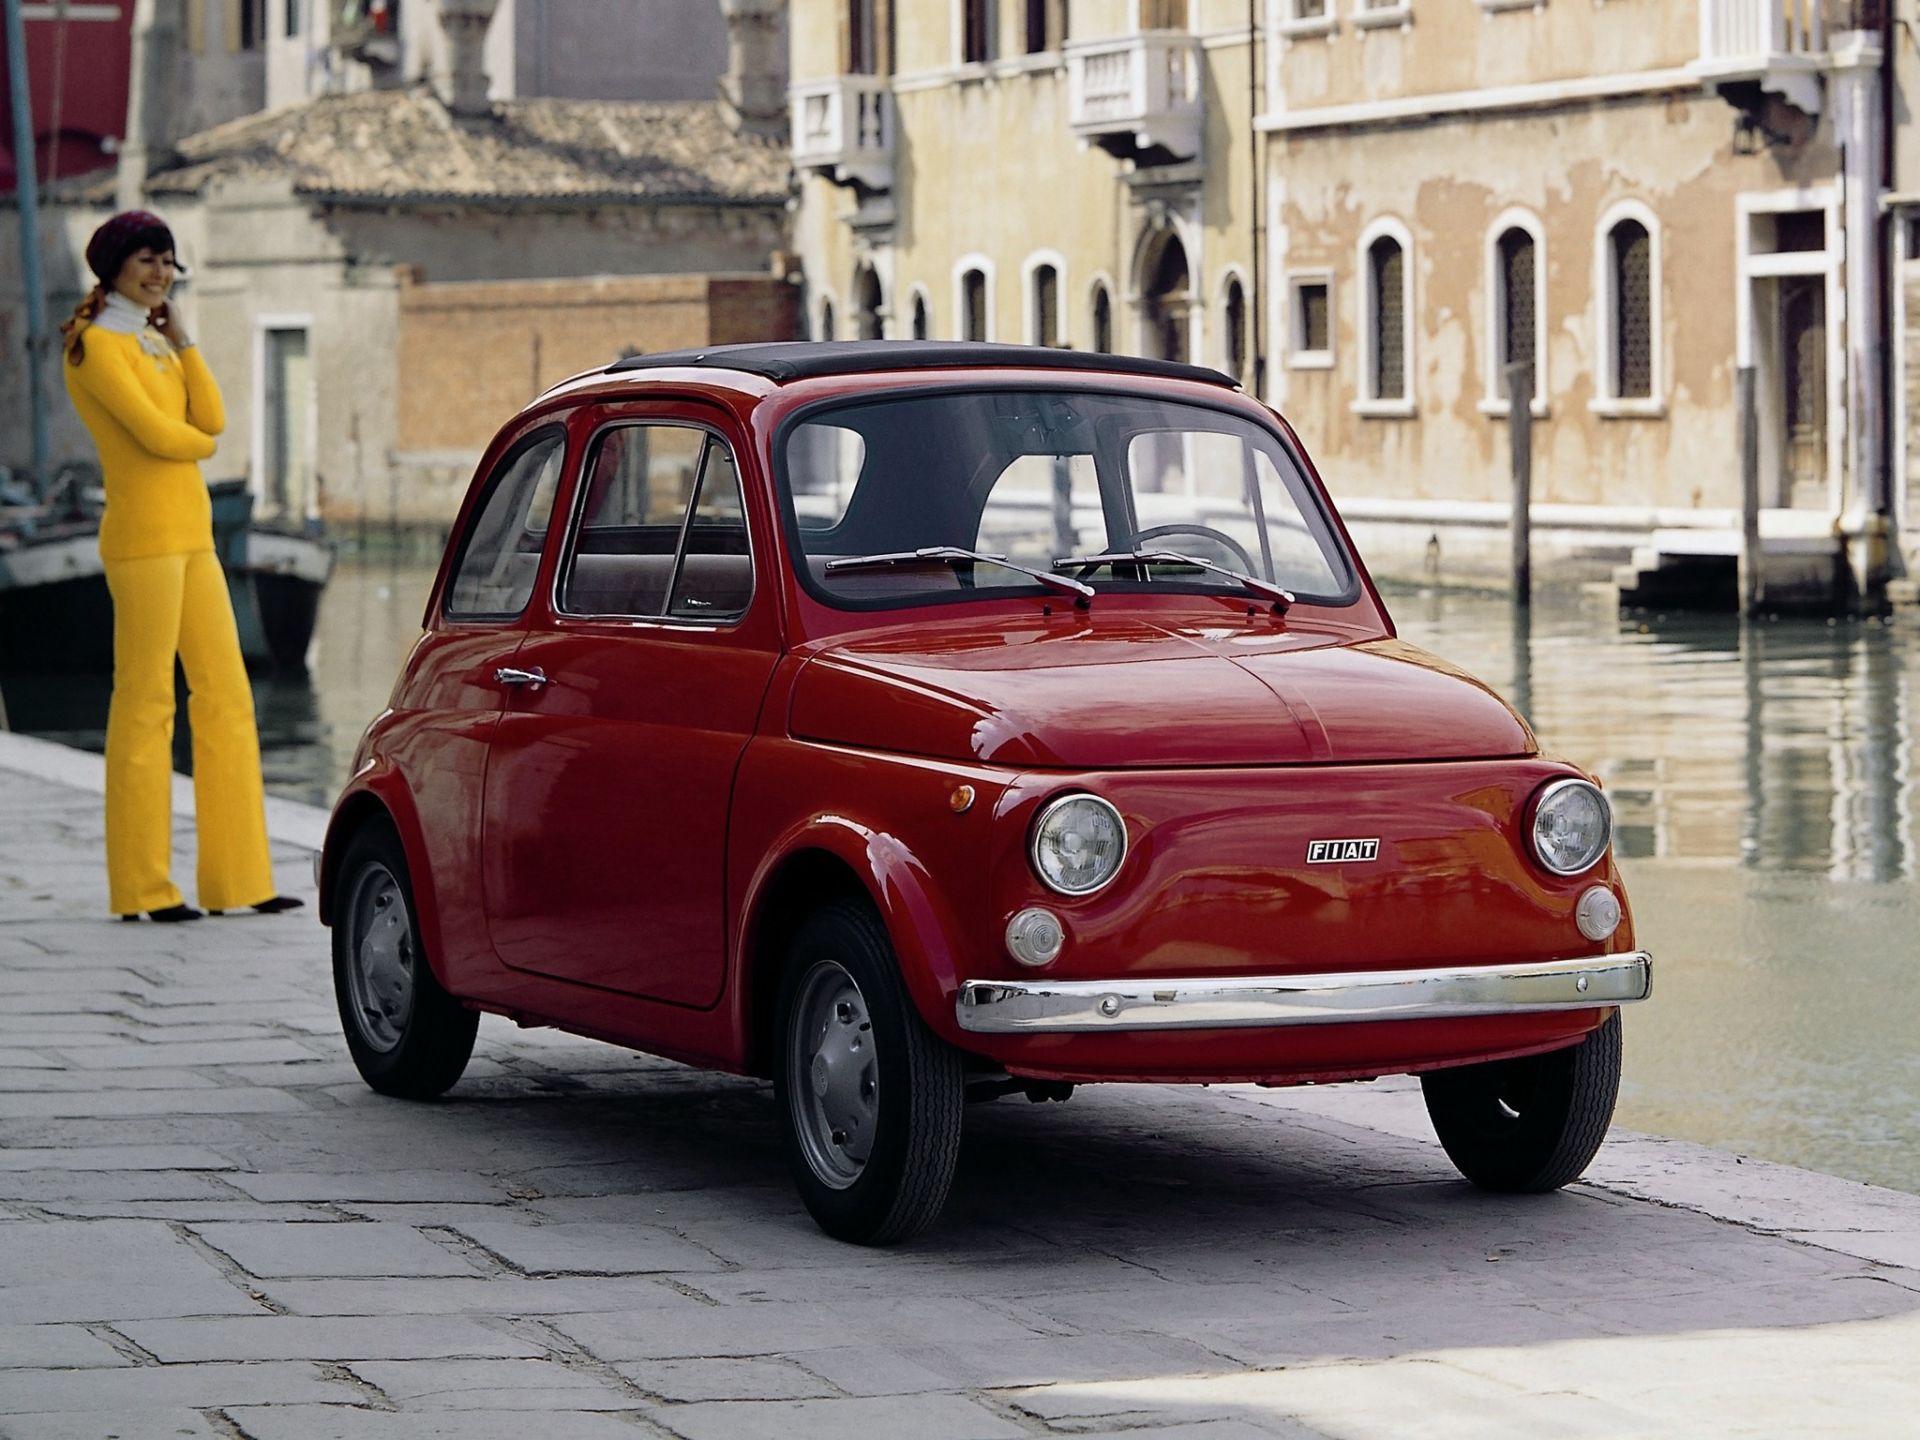 Talianske auto Fiat 500 R 1972-1975 Rinnovata - červené, historické auto